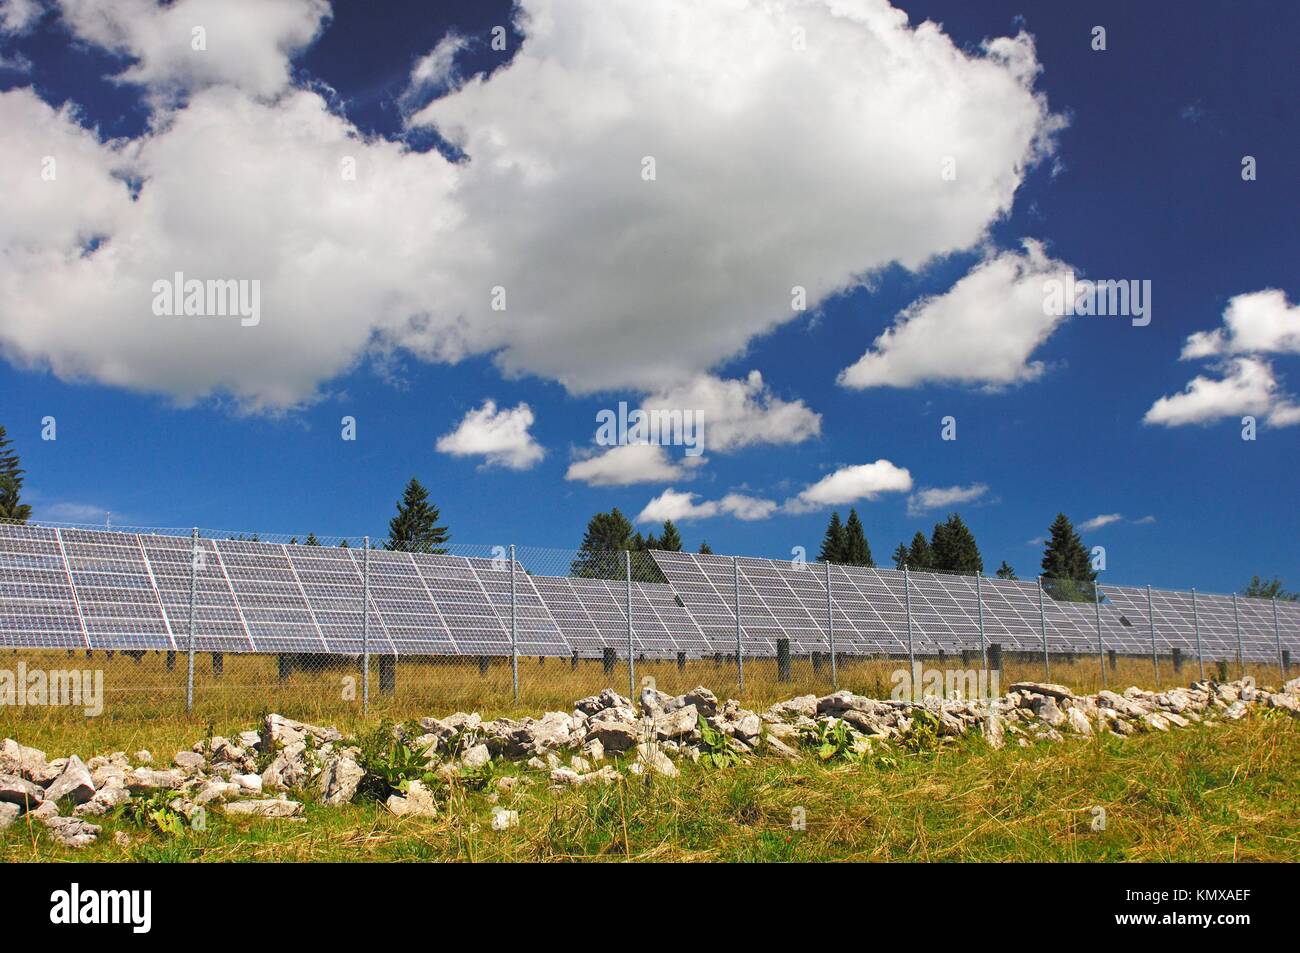 Paneles solares de silicio de una granja de energía solar fotovoltaica centro Mont Soleil, St Imier, cantón del Jura, Suiza Foto de stock